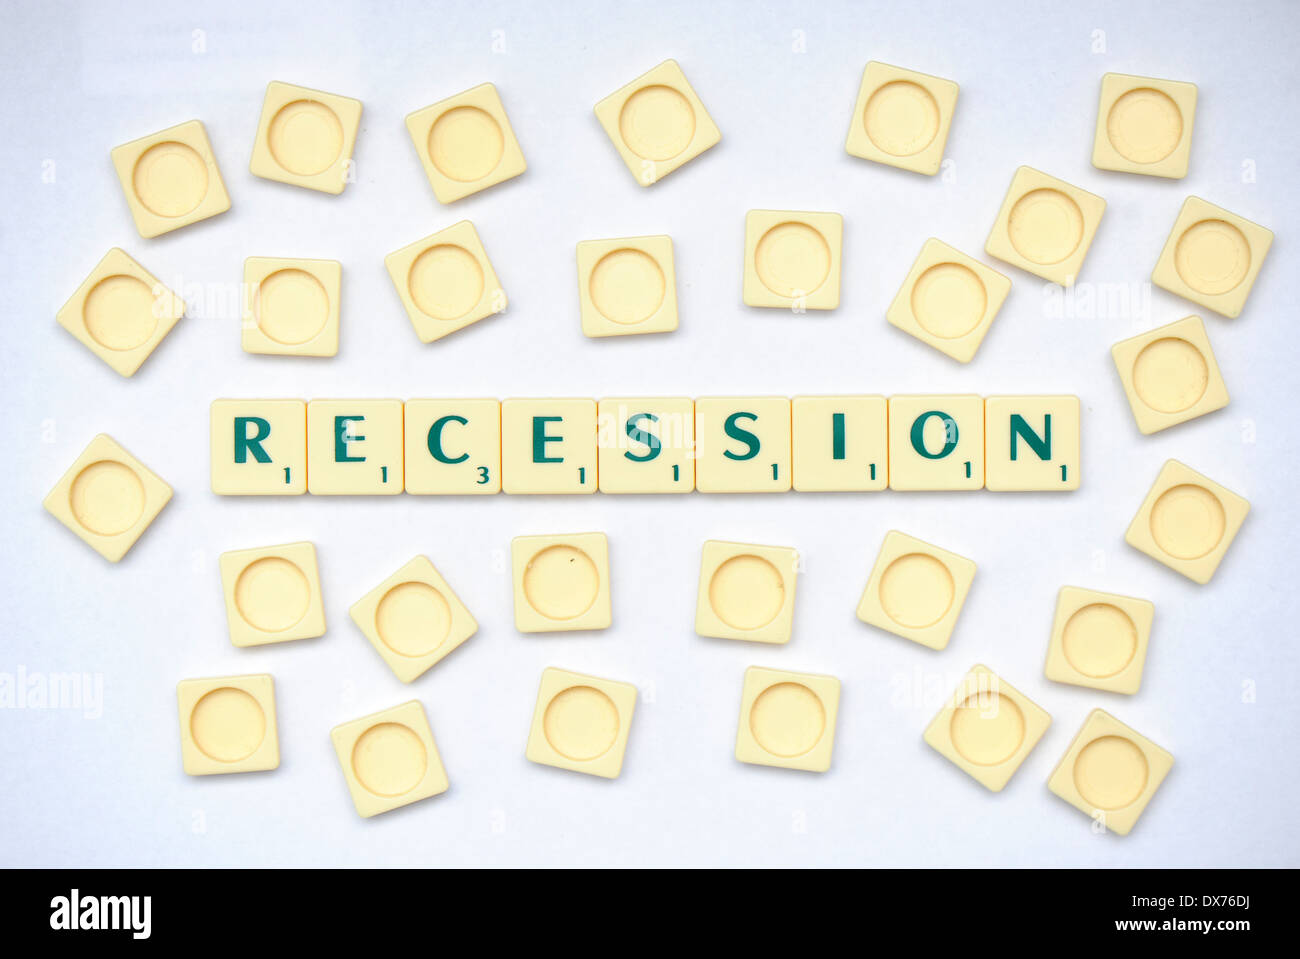 Scrabble piastrelle che leggere la recessione Foto Stock